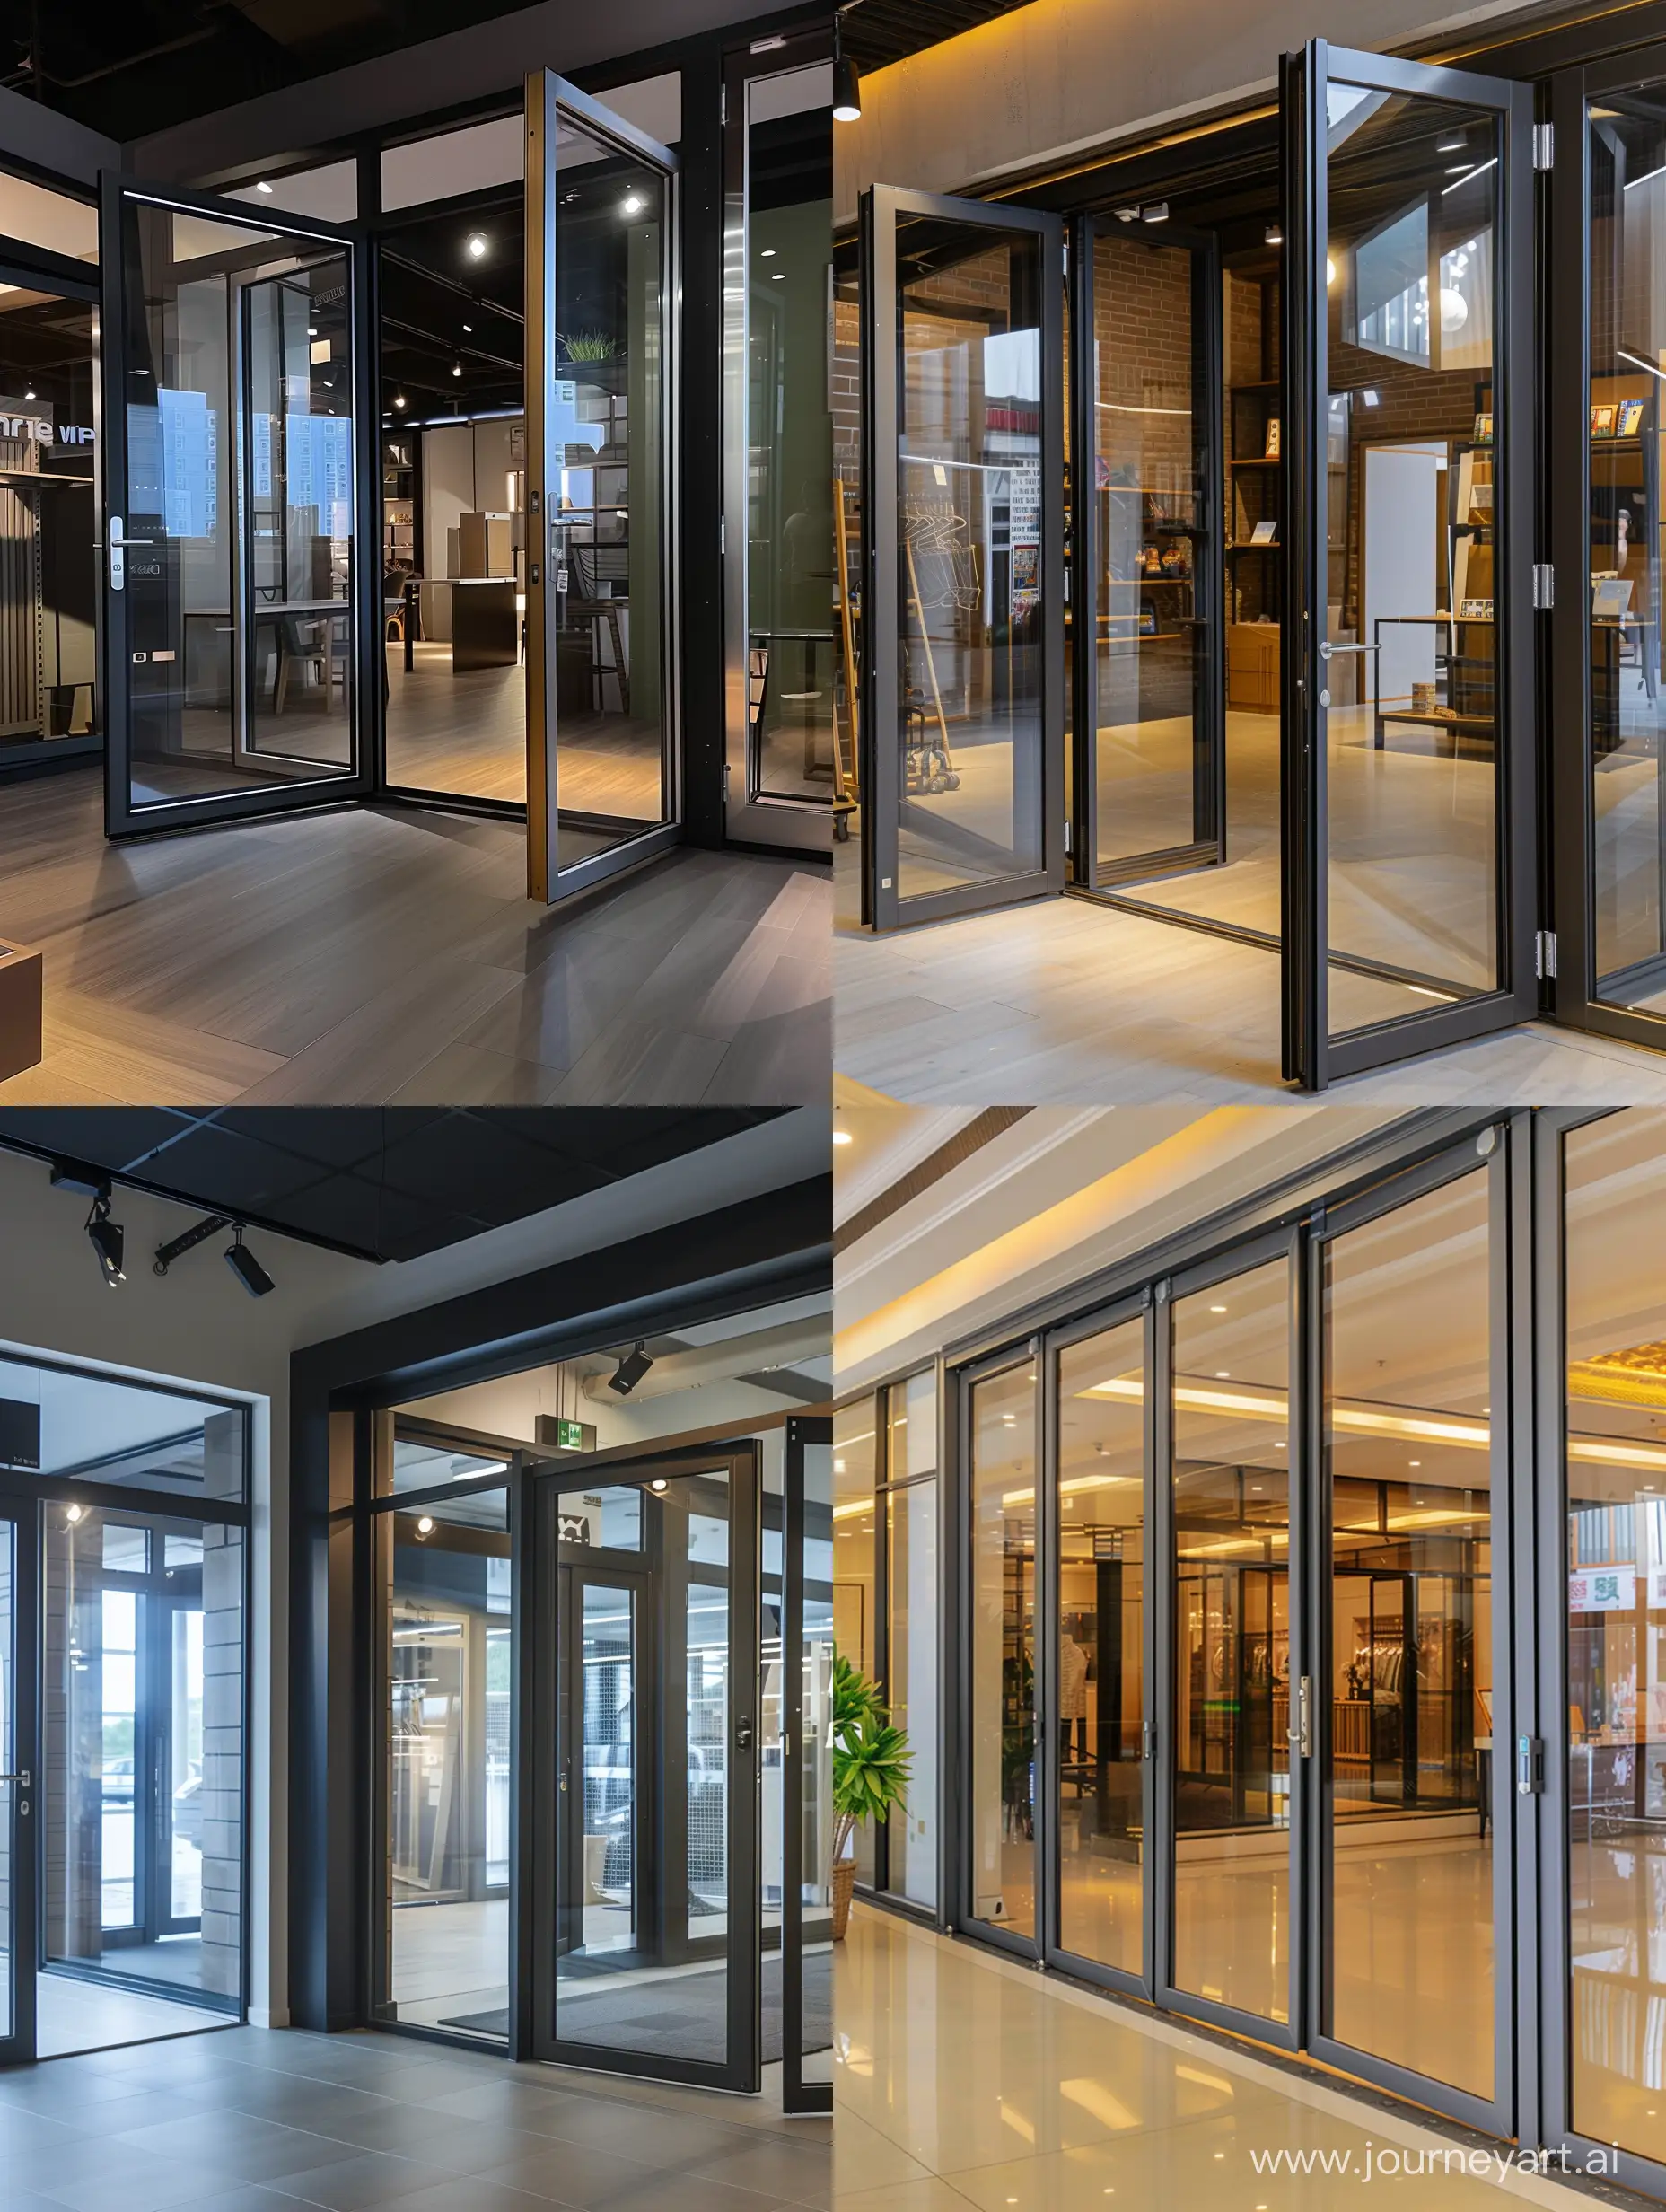 Luxurious-Aluminium-Door-and-Window-Display-in-HighEnd-Retail-Shop